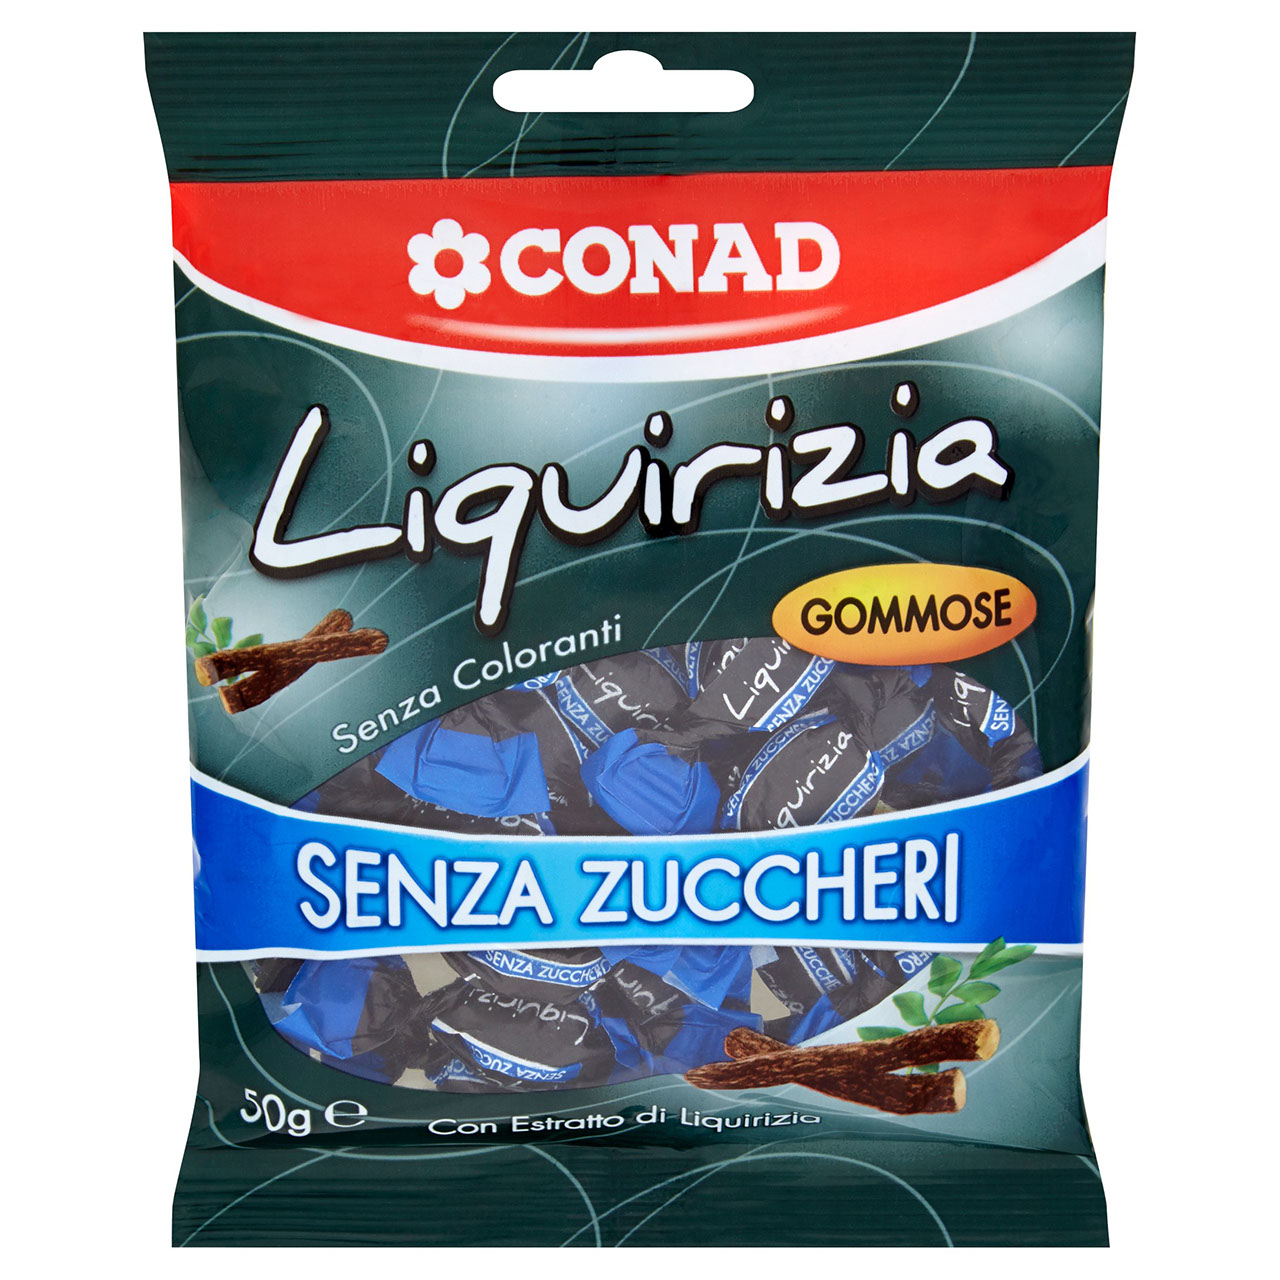 CONAD Le Gommose Liquirizia Senza Zuccheri 50 g